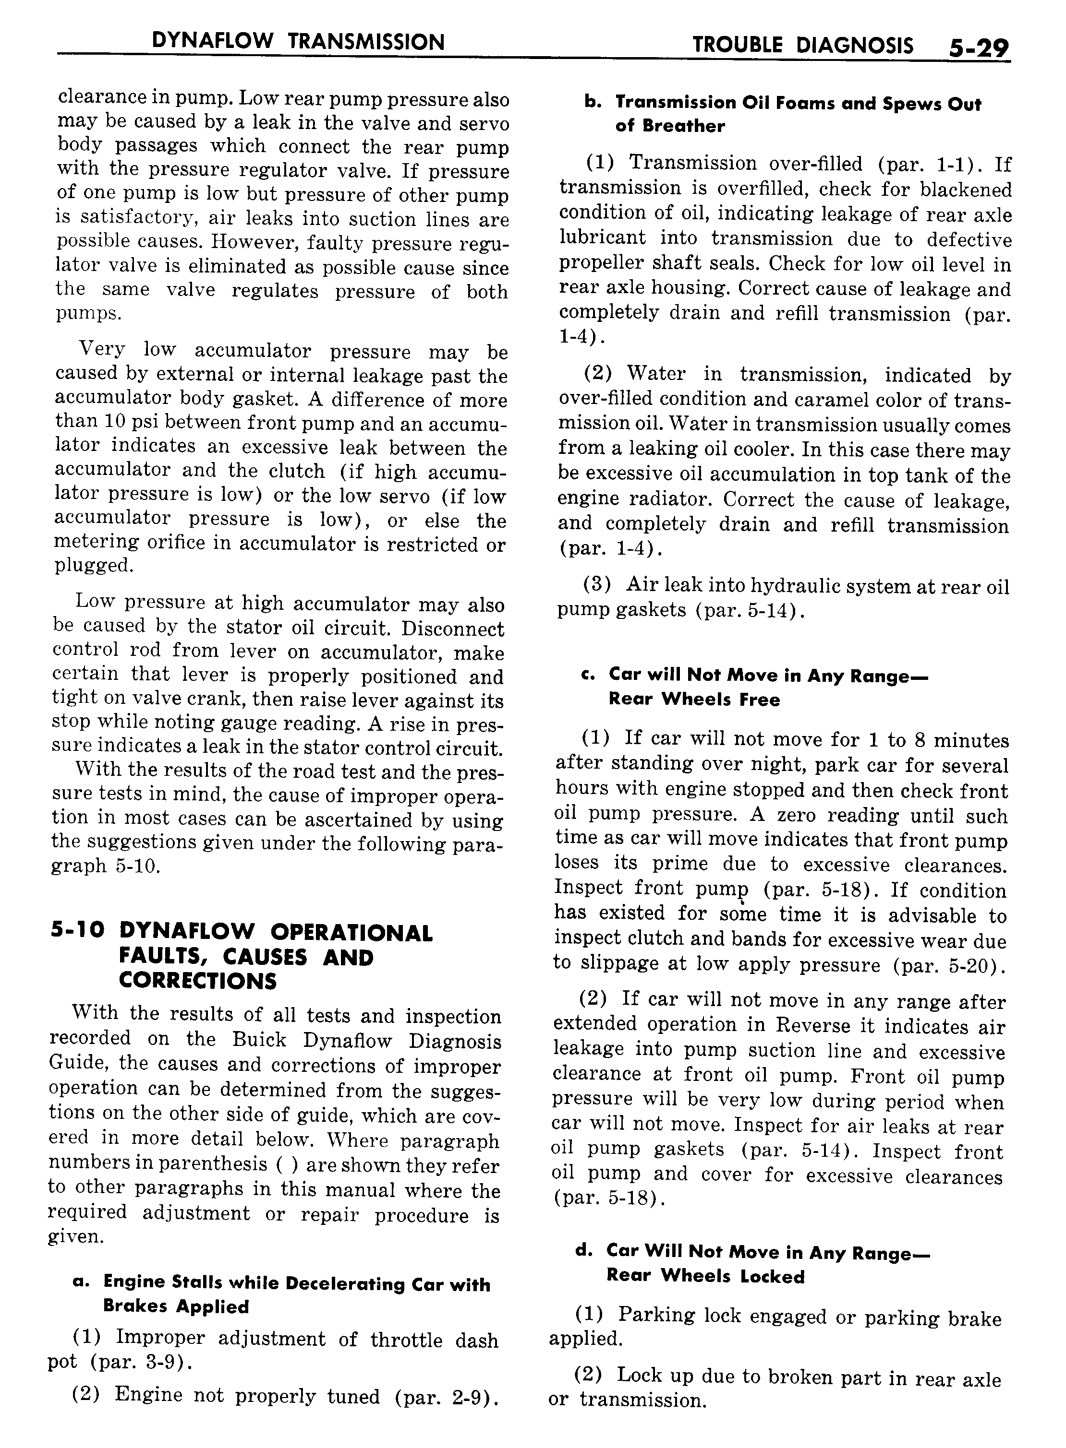 n_06 1957 Buick Shop Manual - Dynaflow-029-029.jpg